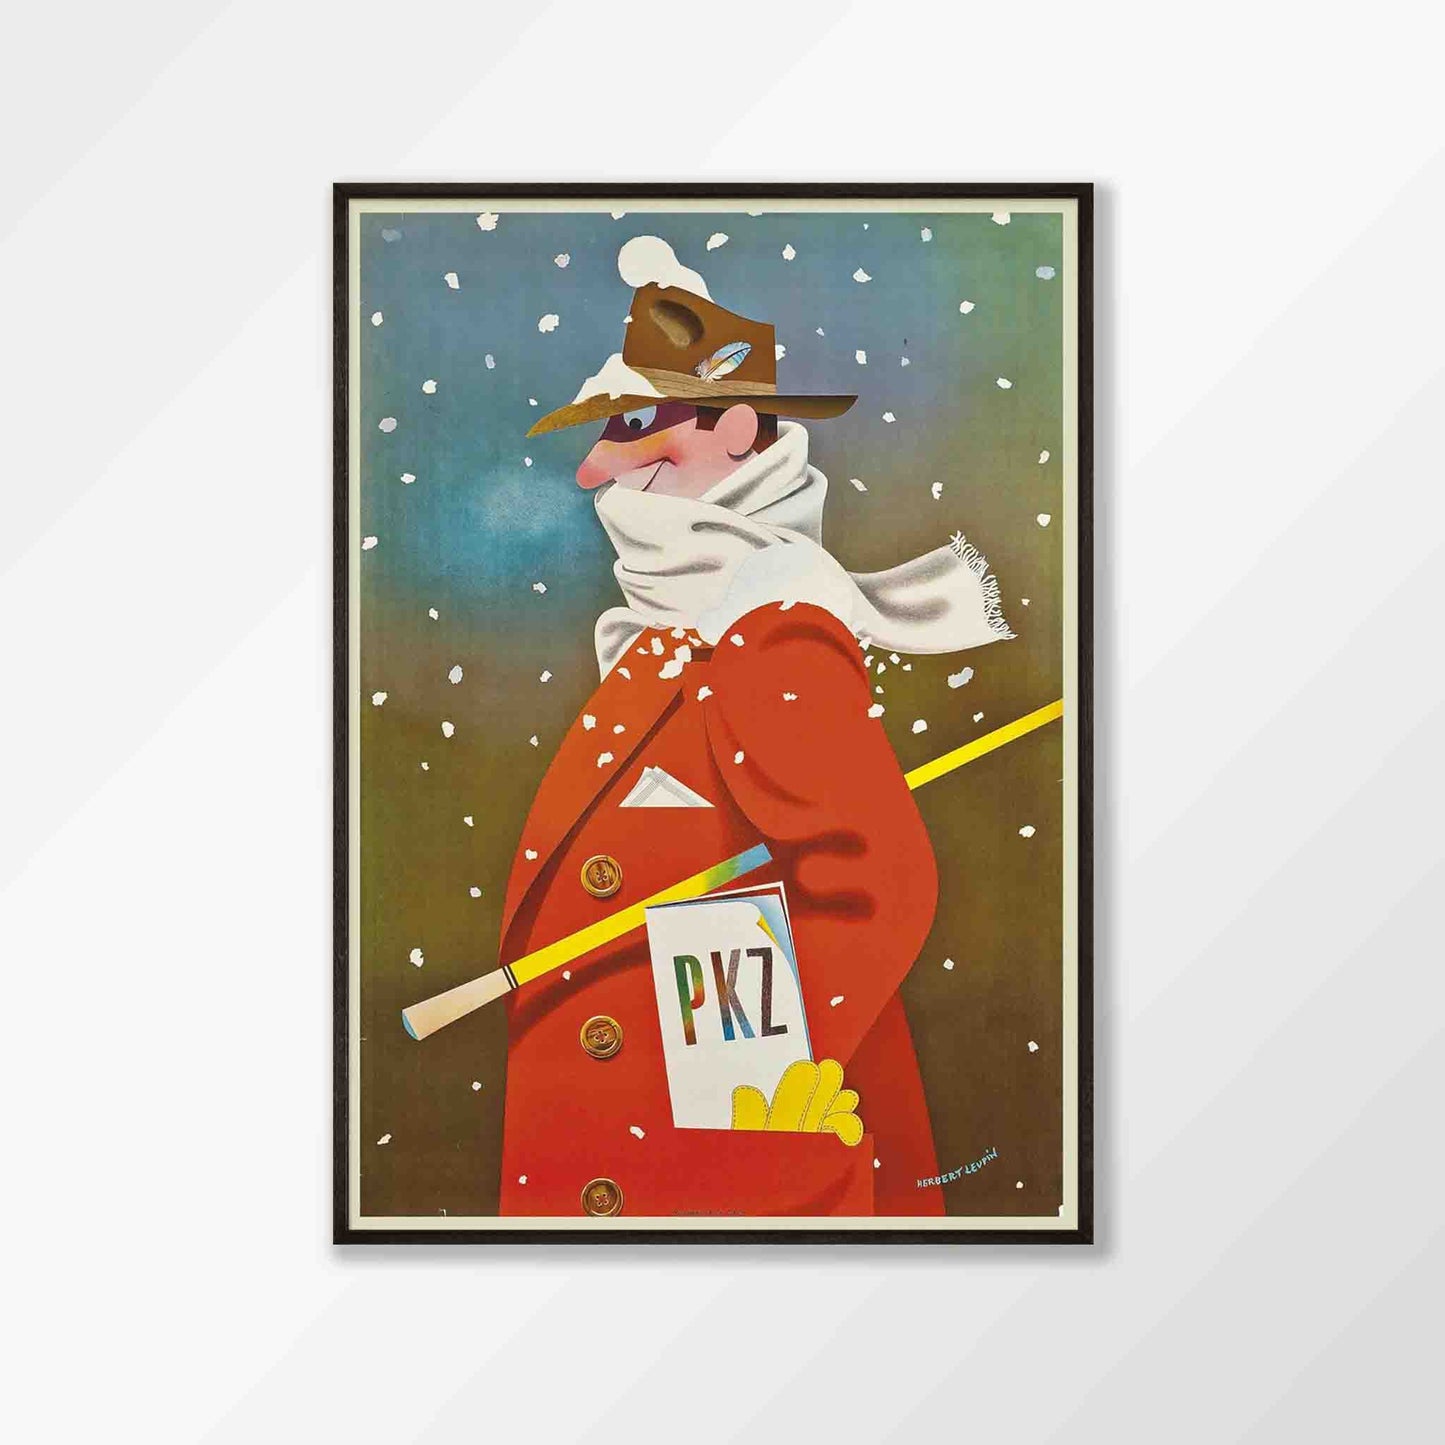 Snowman by Herbert Leupin